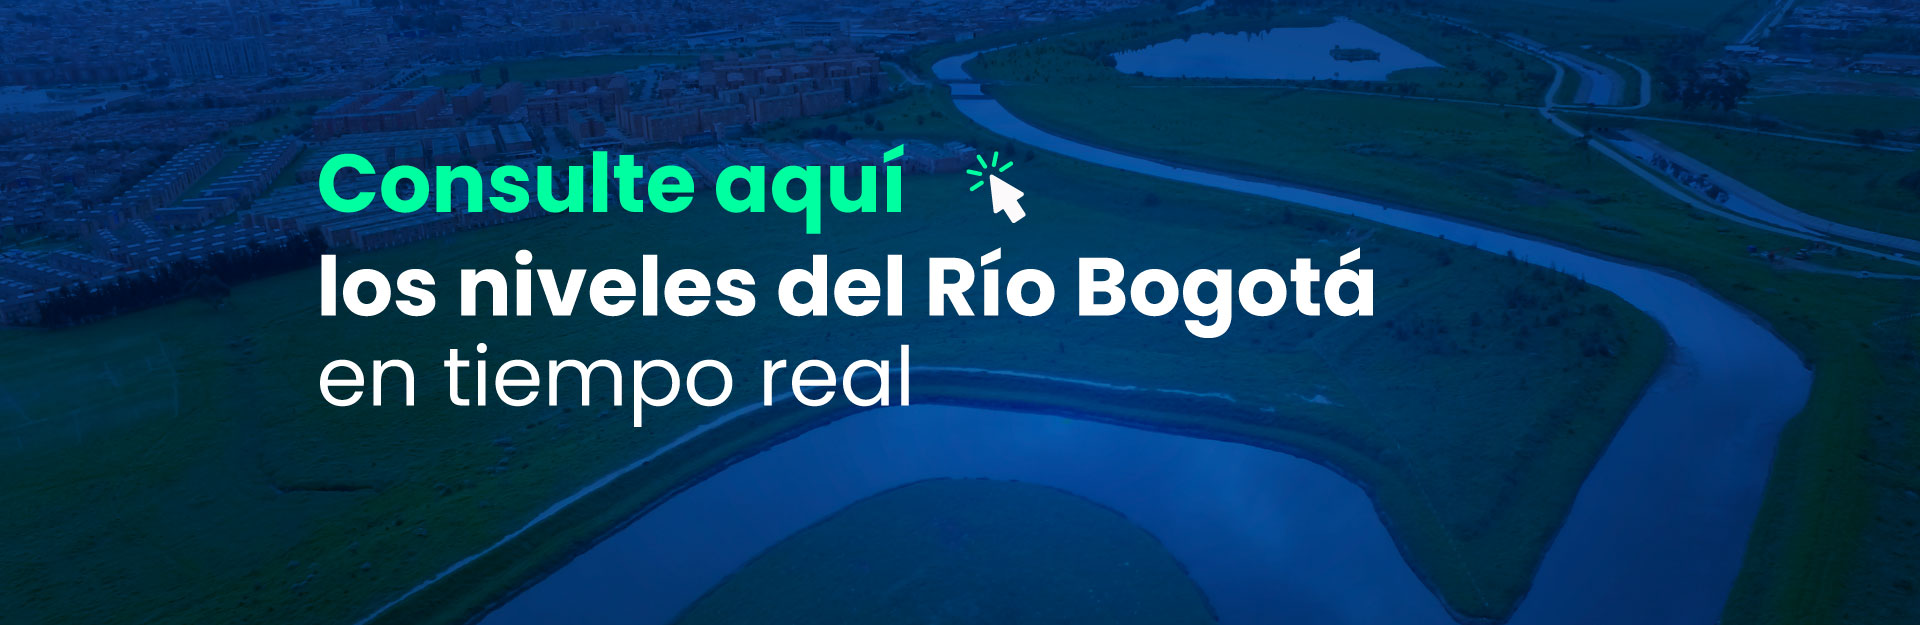 Consulte aquí los niveles del Río Bogotá en tiempo real